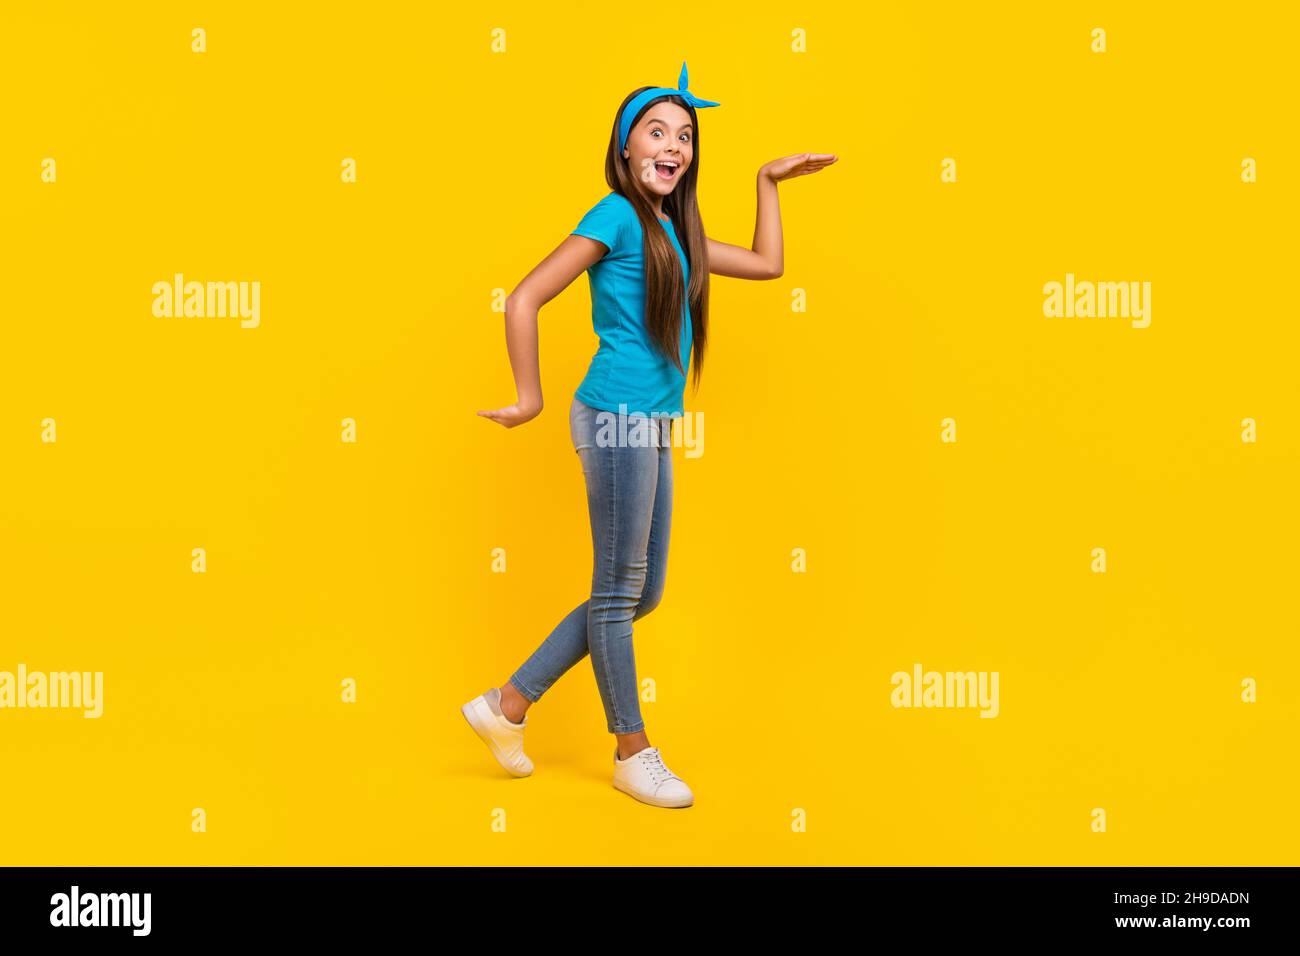 Photo de côté pleine profil de corps de jeune charmante dame ont amusant marche danseuse ludique isolée sur fond jaune de couleur Banque D'Images